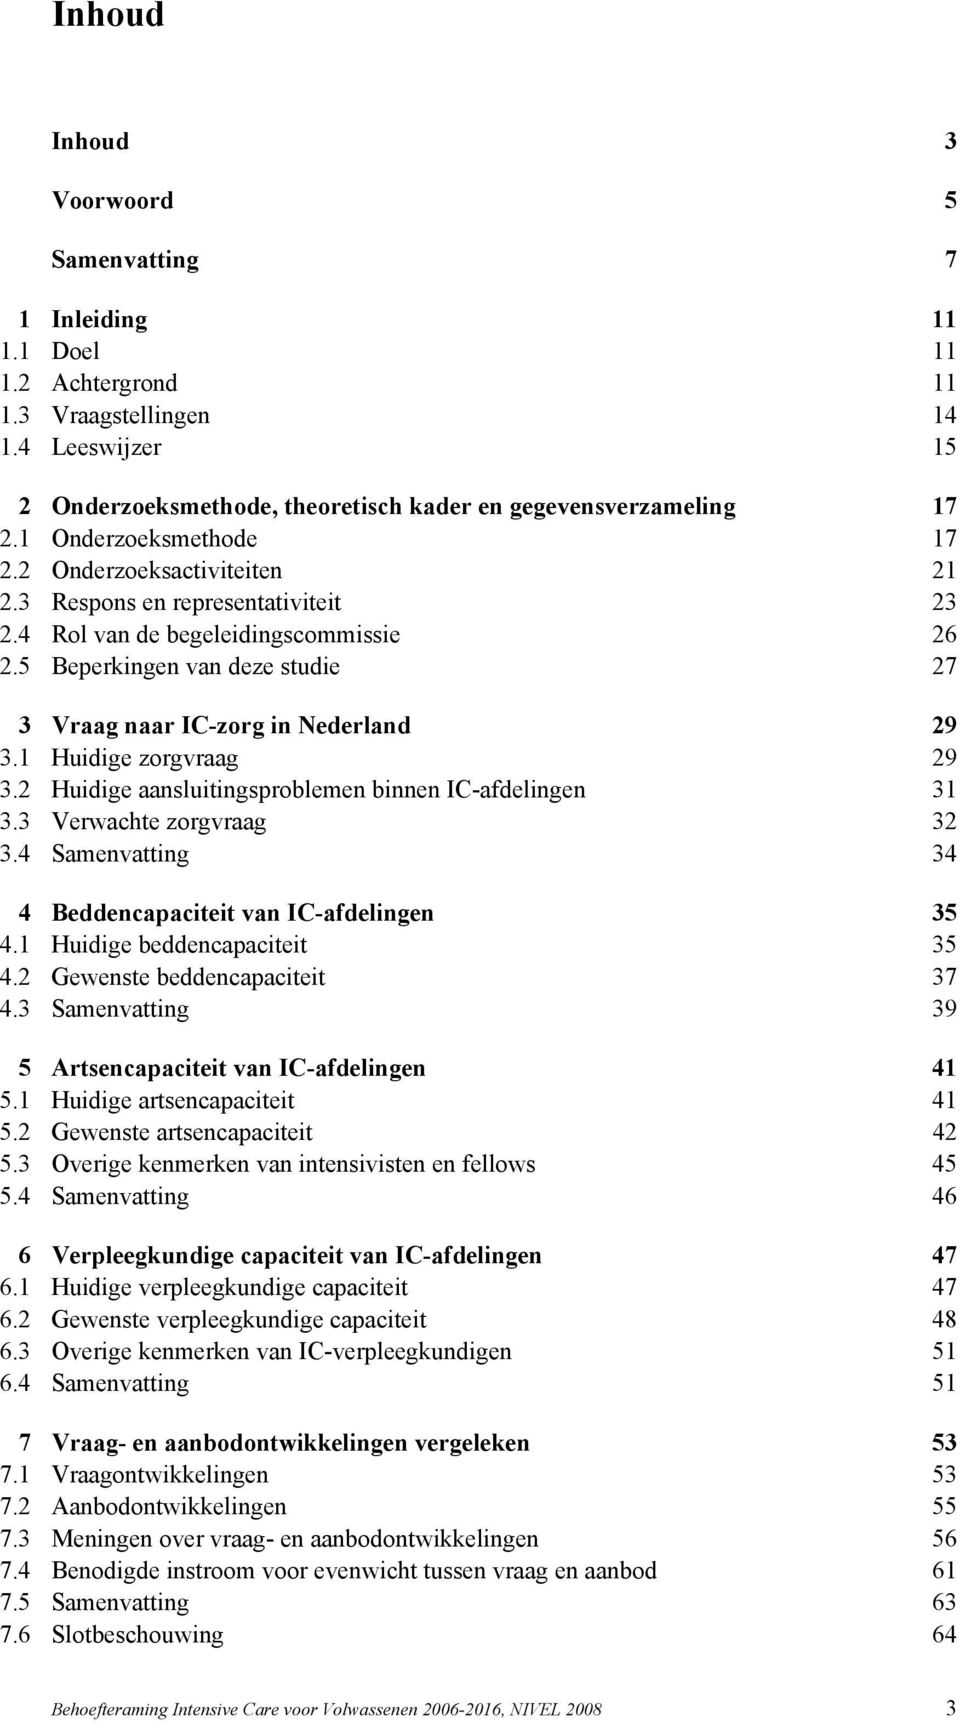 5 Beperkingen van deze studie 27 3 Vraag naar IC-zorg in Nederland 29 3.1 Huidige zorgvraag 29 3.2 Huidige aansluitingsproblemen binnen IC-afdelingen 31 3.3 Verwachte zorgvraag 32 3.